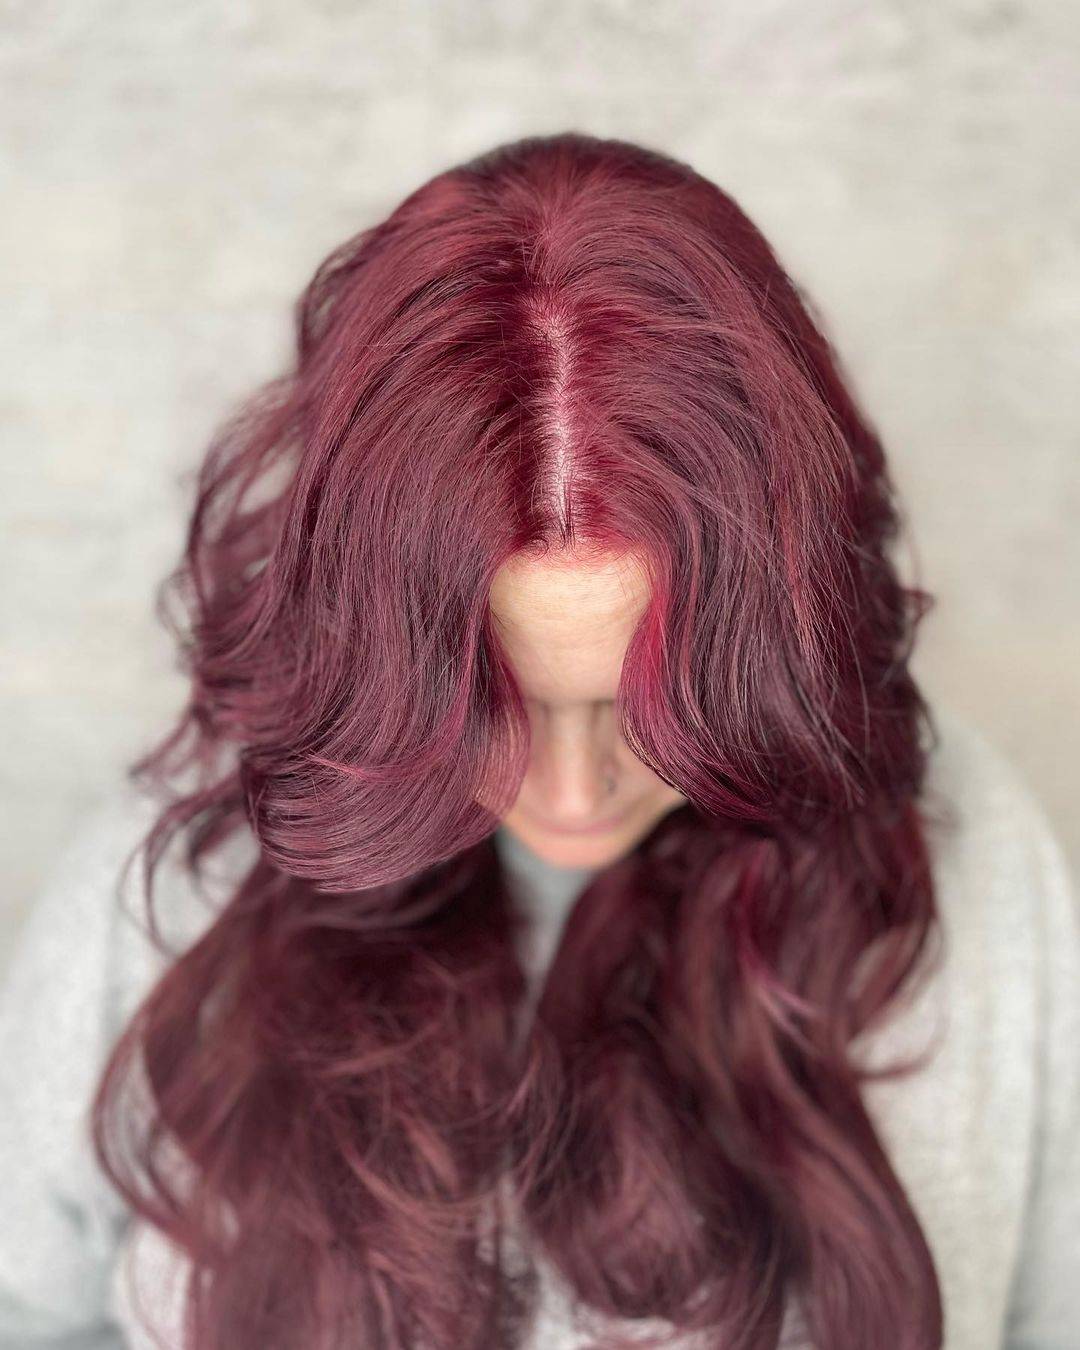 Burgundy hair color 407 burgundy hair color | burgundy hair color for women | burgundy hair color highlights Burgundy Hair Color